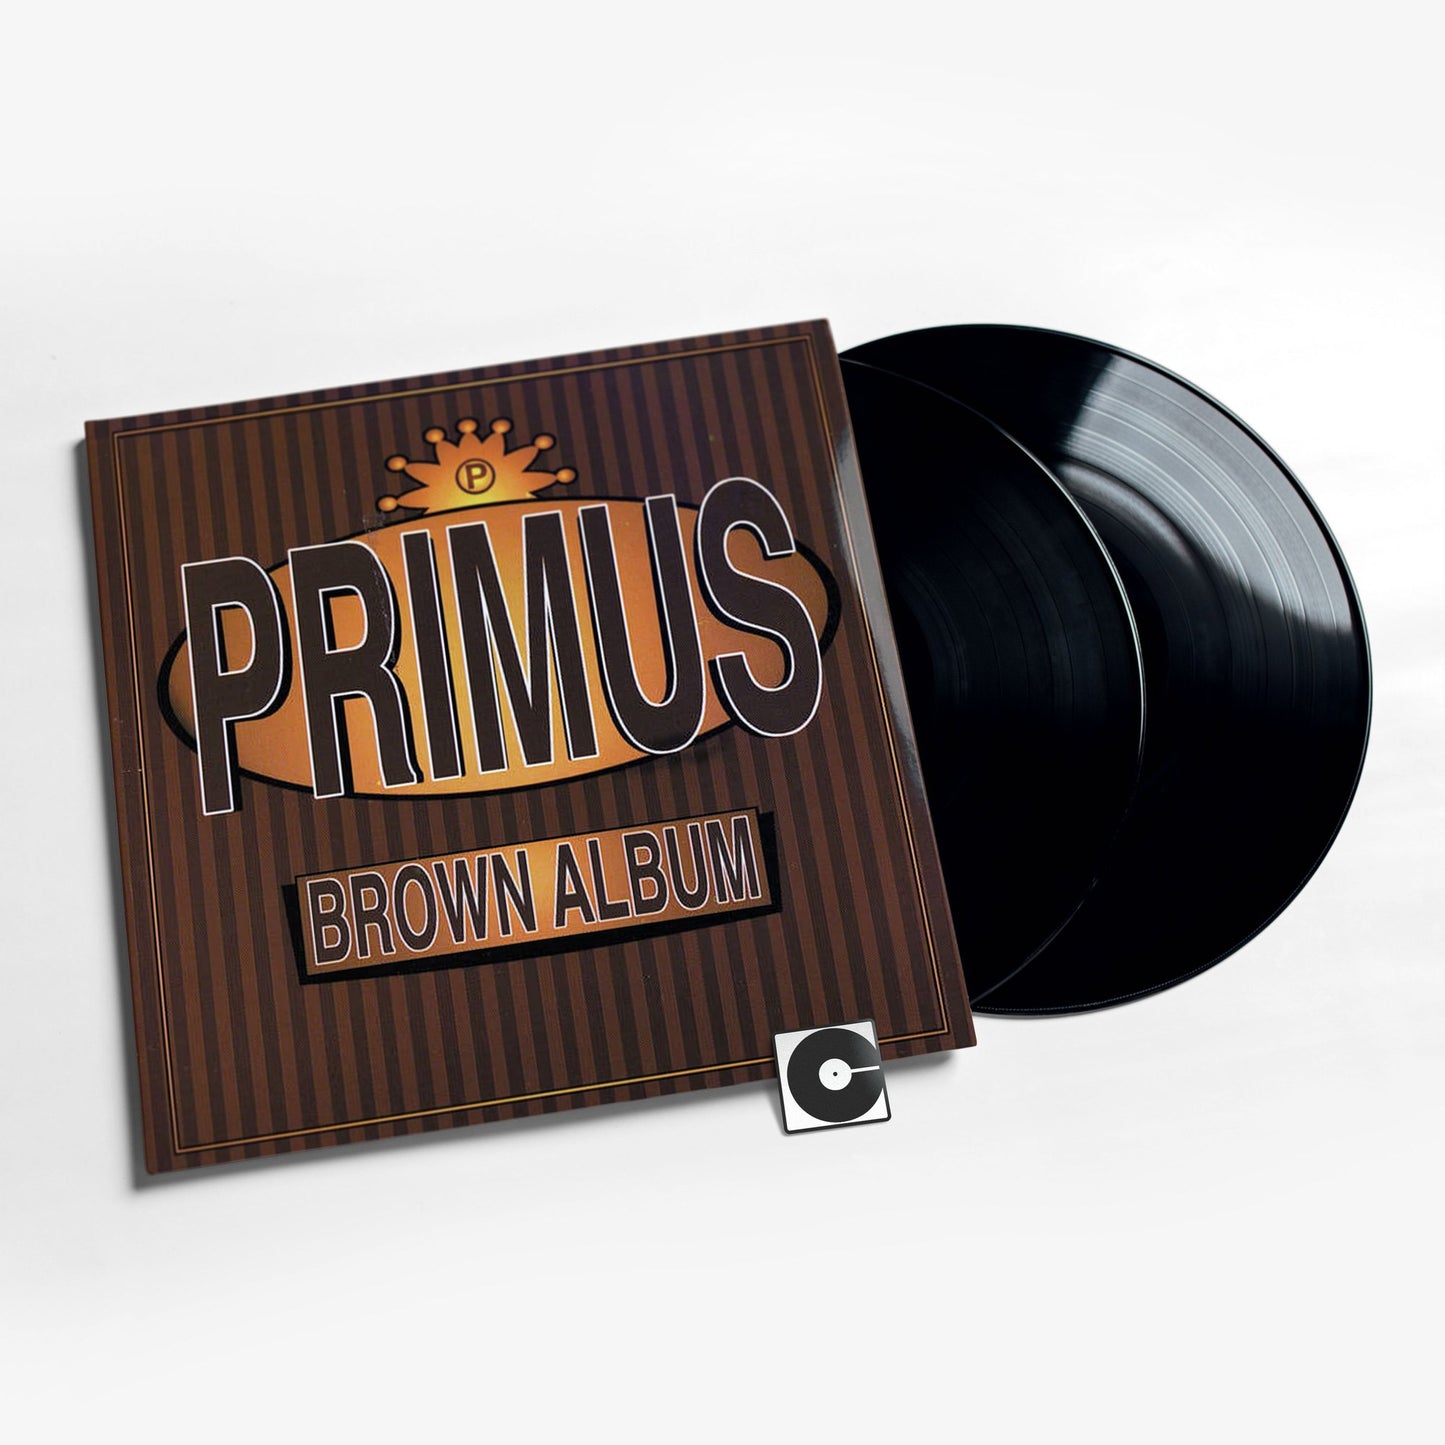 Primus - "Brown Album"